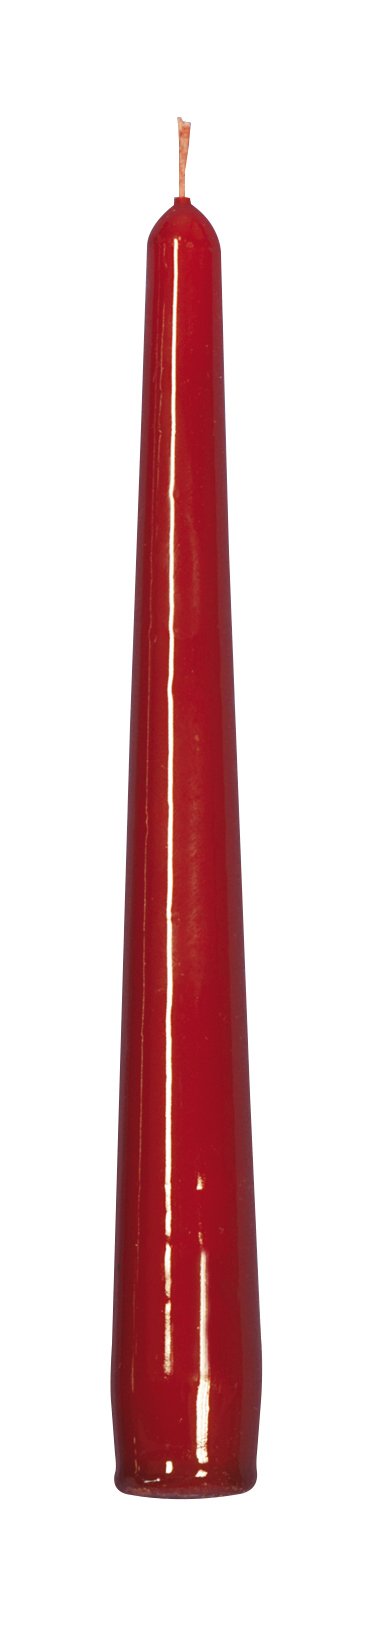 Candela conica liscia laccata rosso